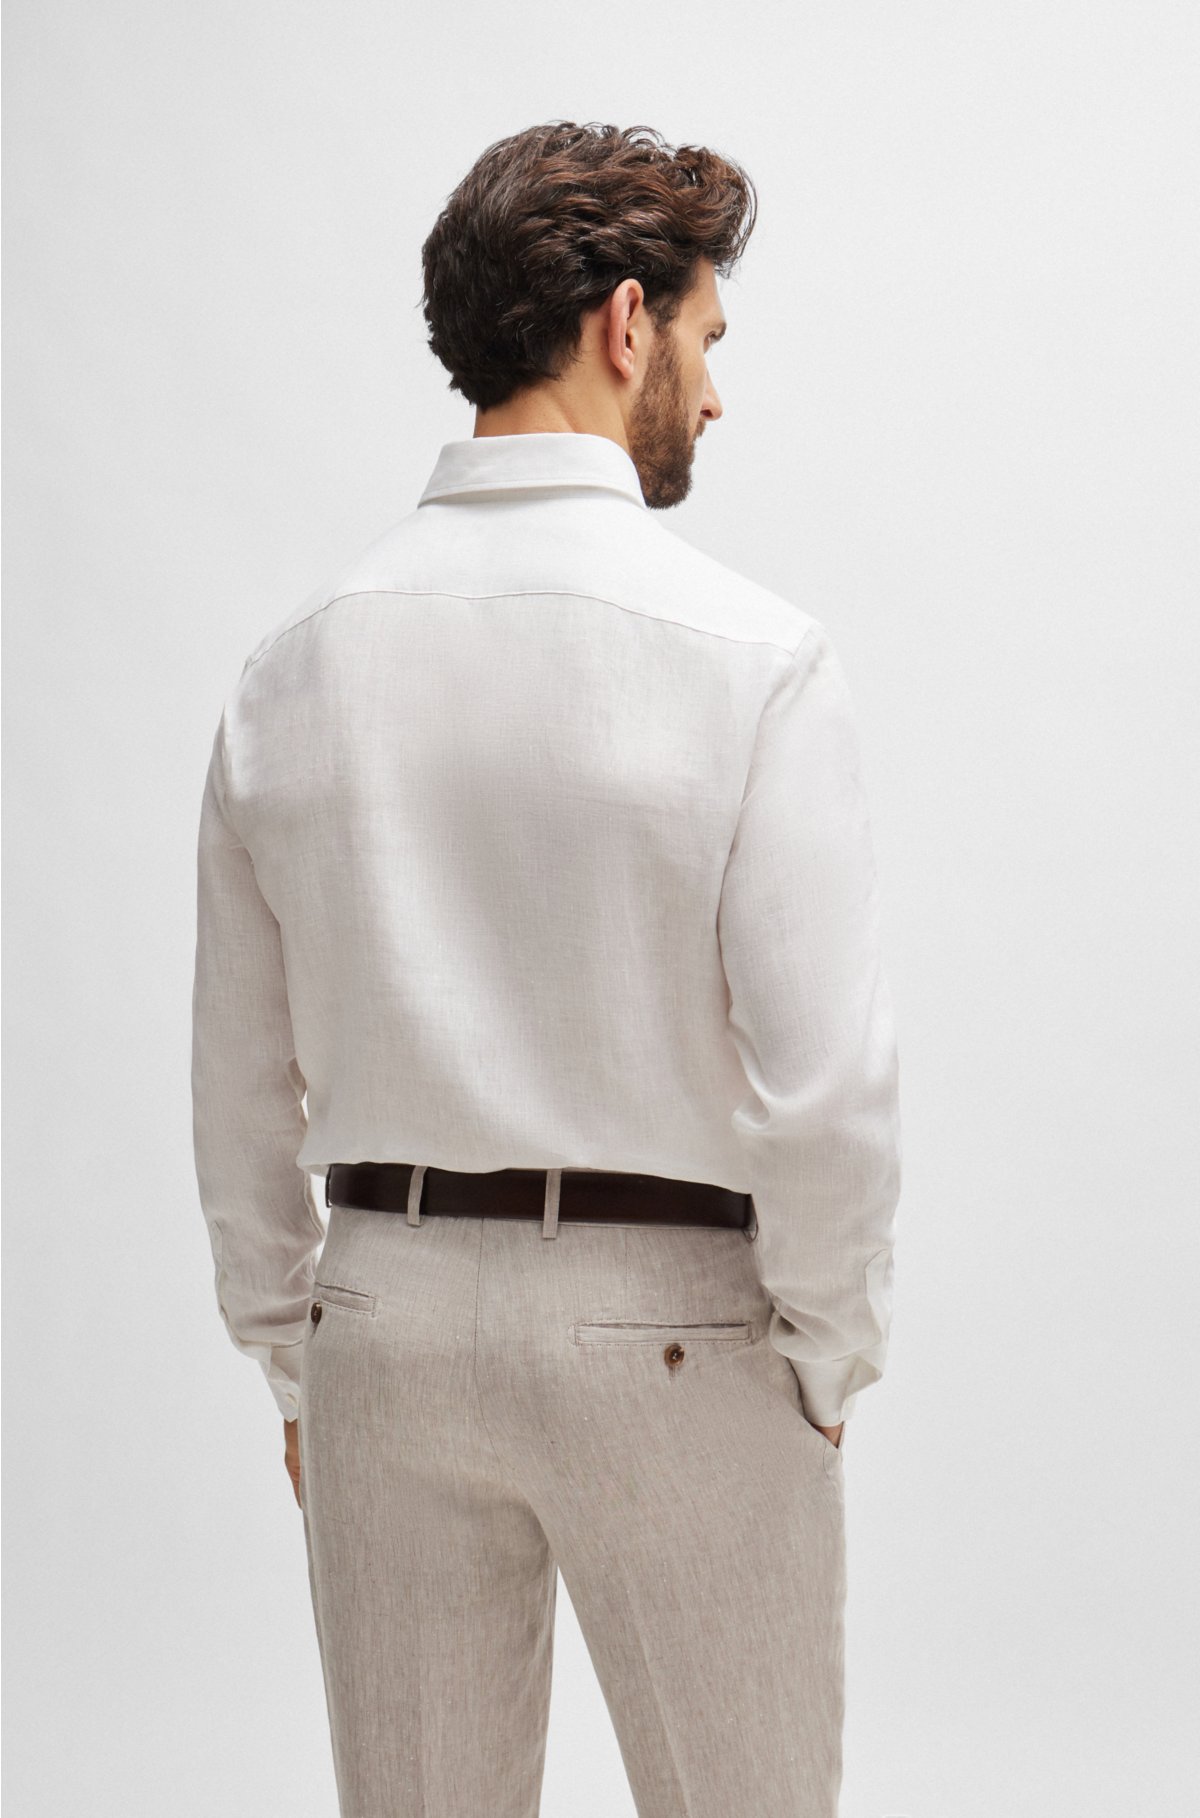 Long-length regular-fit button-down shirt in linen, White